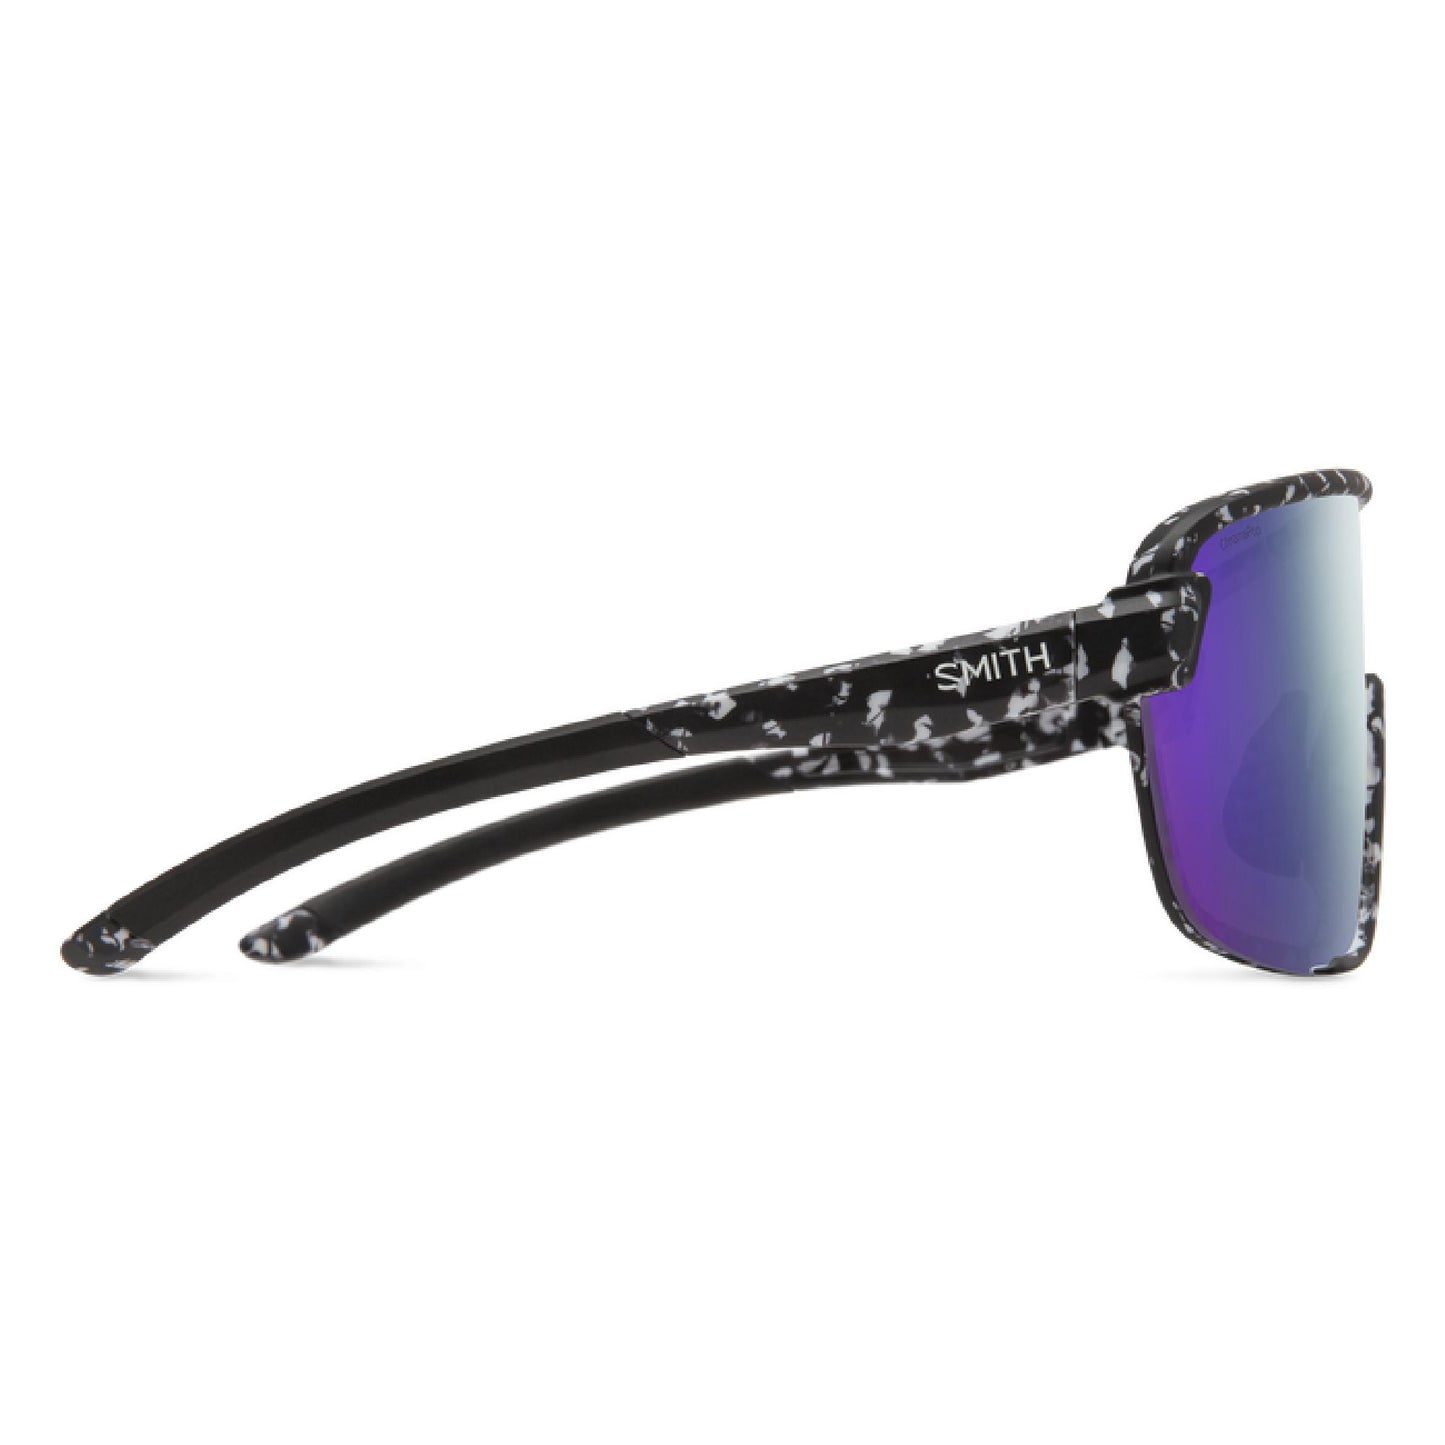 Smith Bobcat Sunglasses Matte Black Marble / ChromaPop Violet Mirror Lens Sunglasses